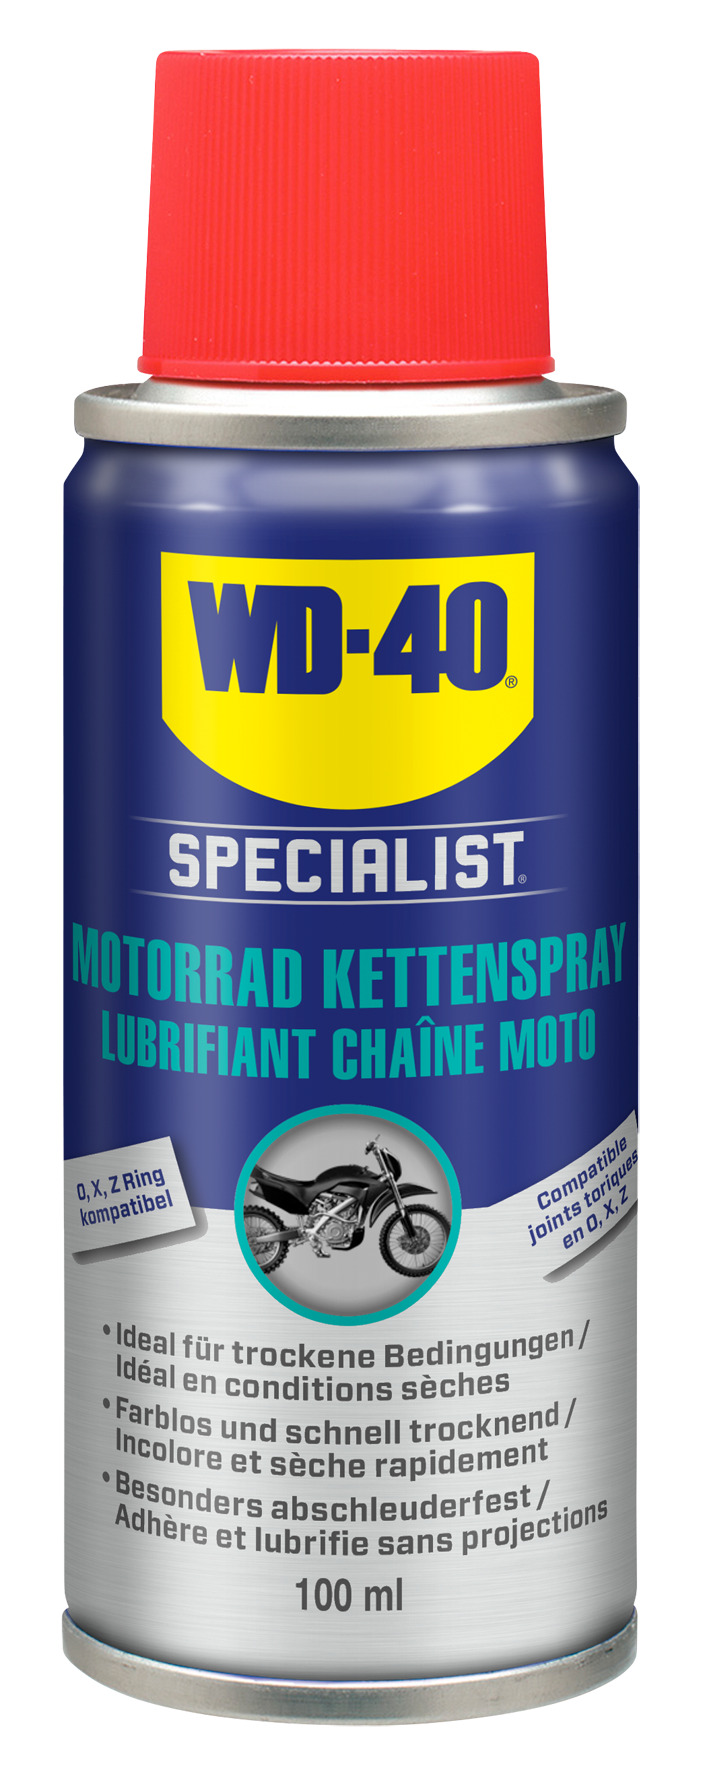 WD-40 lance un lubrifiant chaîne pour moto ! » , le site suisse  de l'information moto